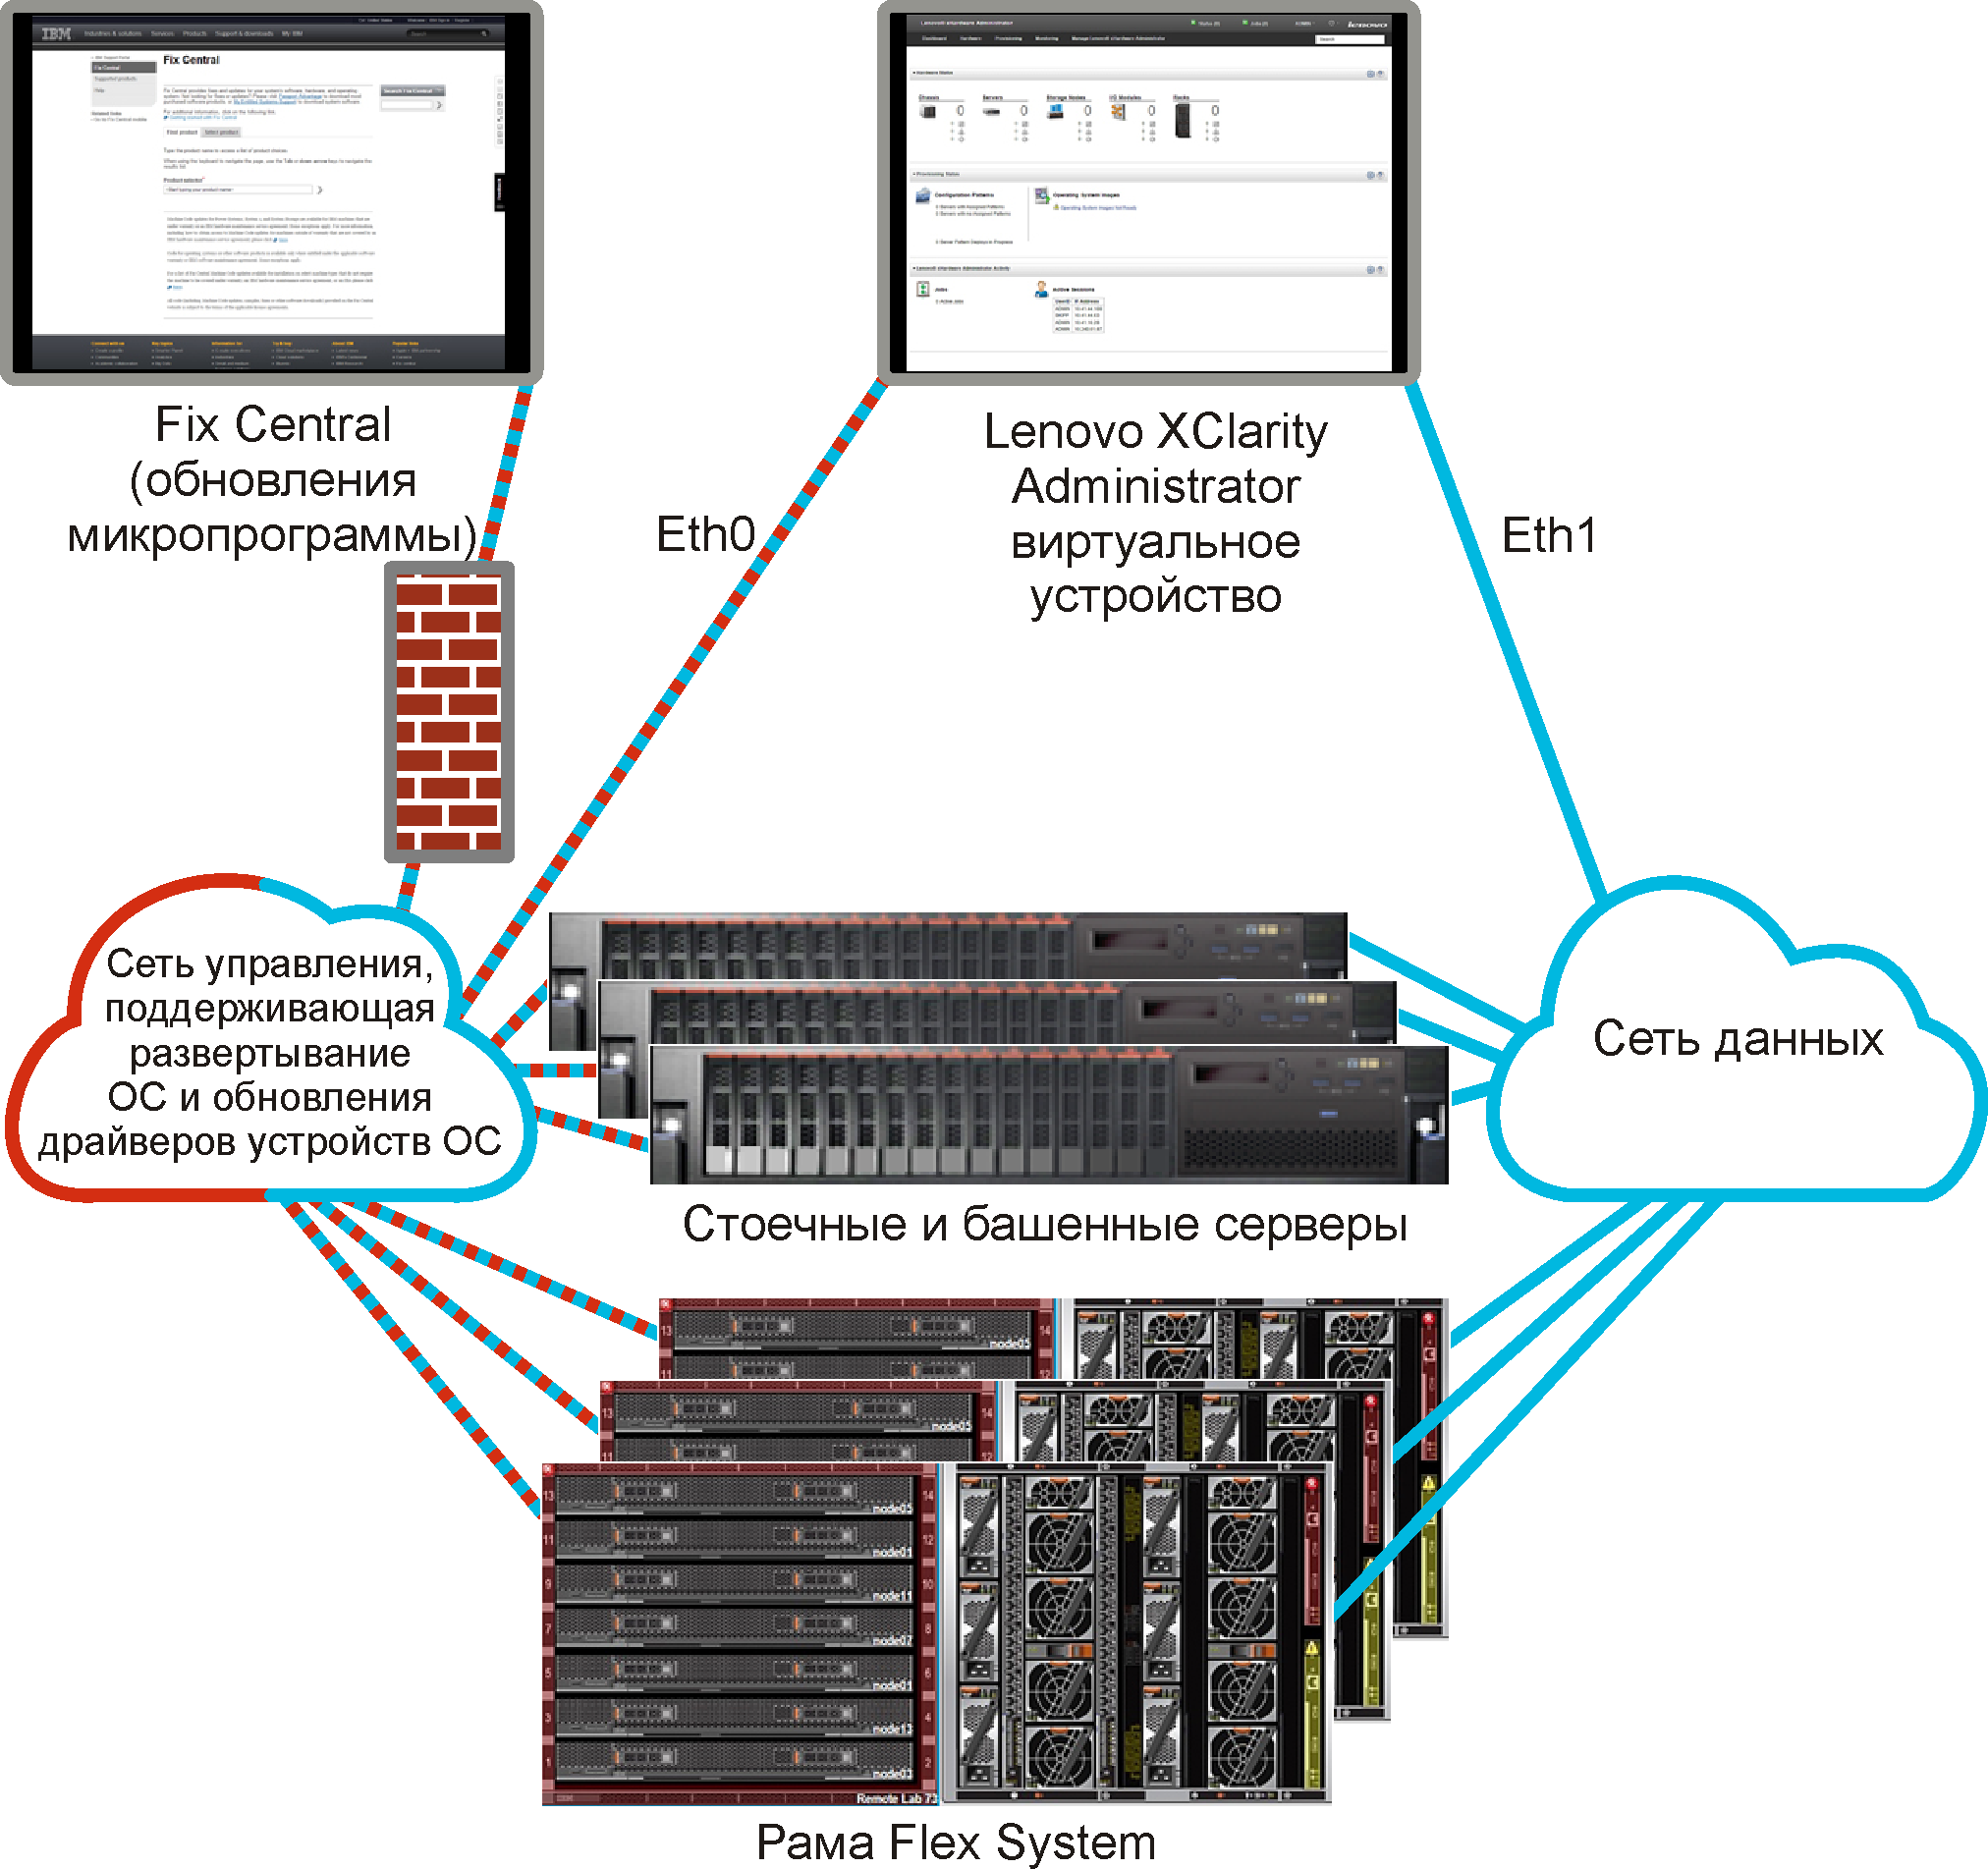 Рисунок с изображением высокоуровневого представления раздельной сети данных и управления. Сеть развертывания операционной системы настроена как часть сети управления.